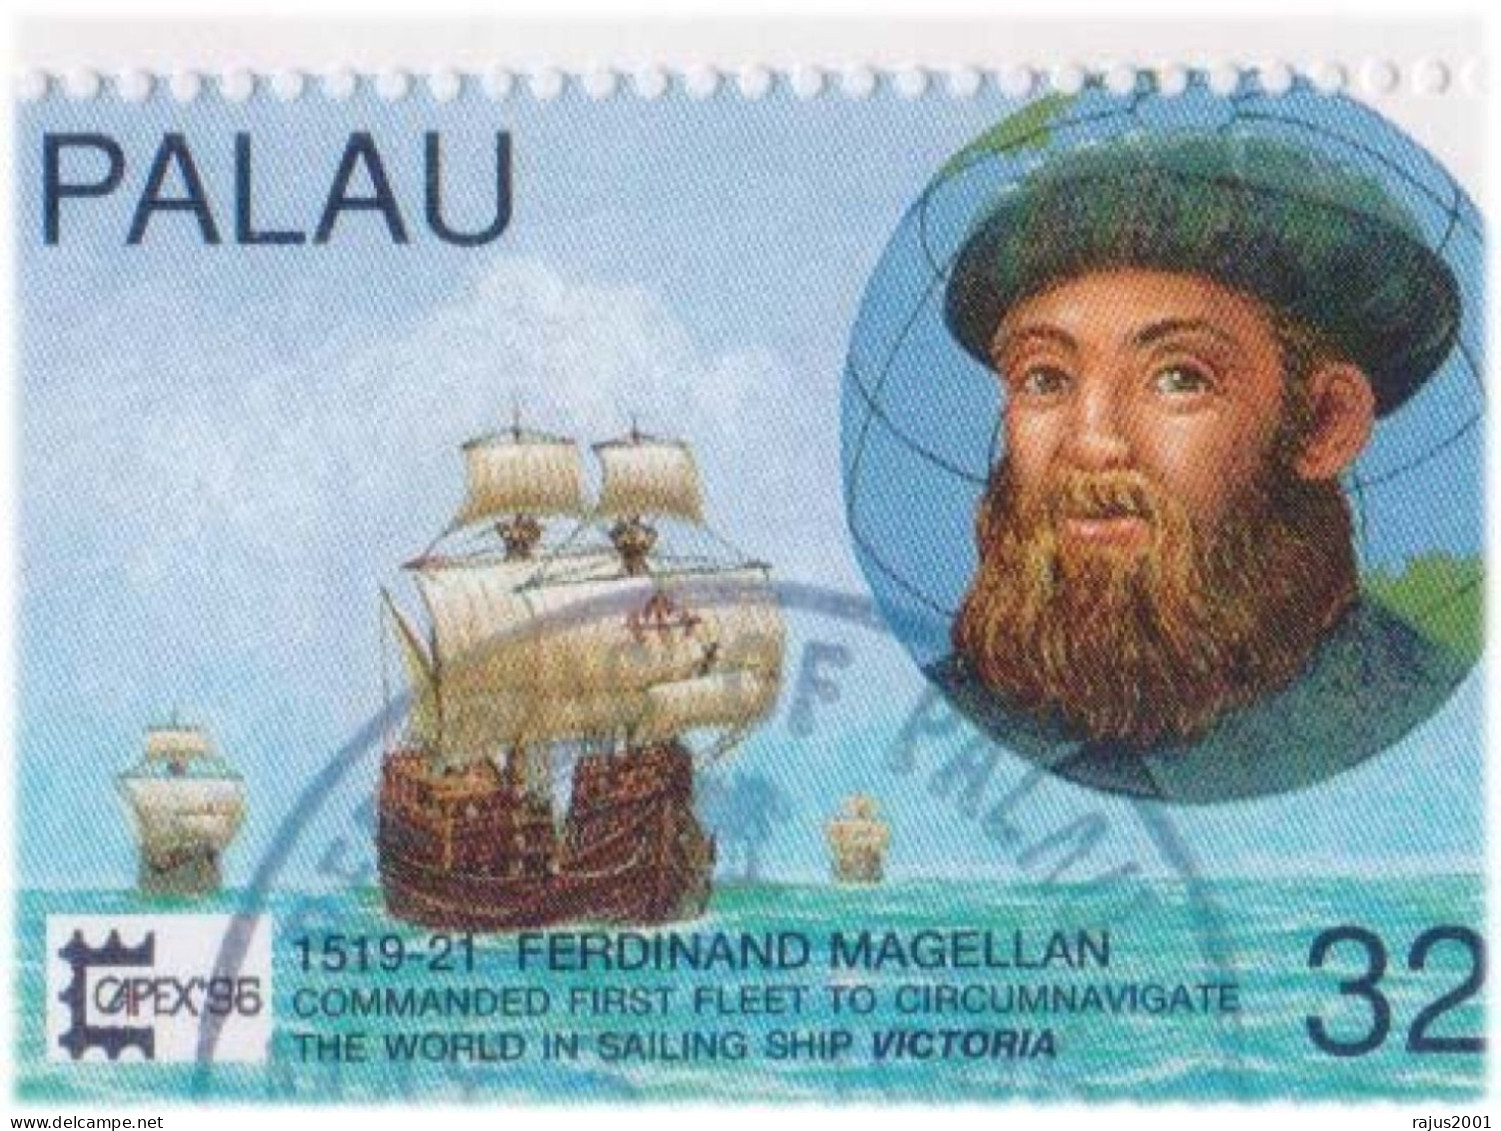 Ferdinand Magellan Command The First Fleet To Circumnavigators, Circumnavigation, Navigator Explorer Ship, Sea Sheet FDC - Erforscher